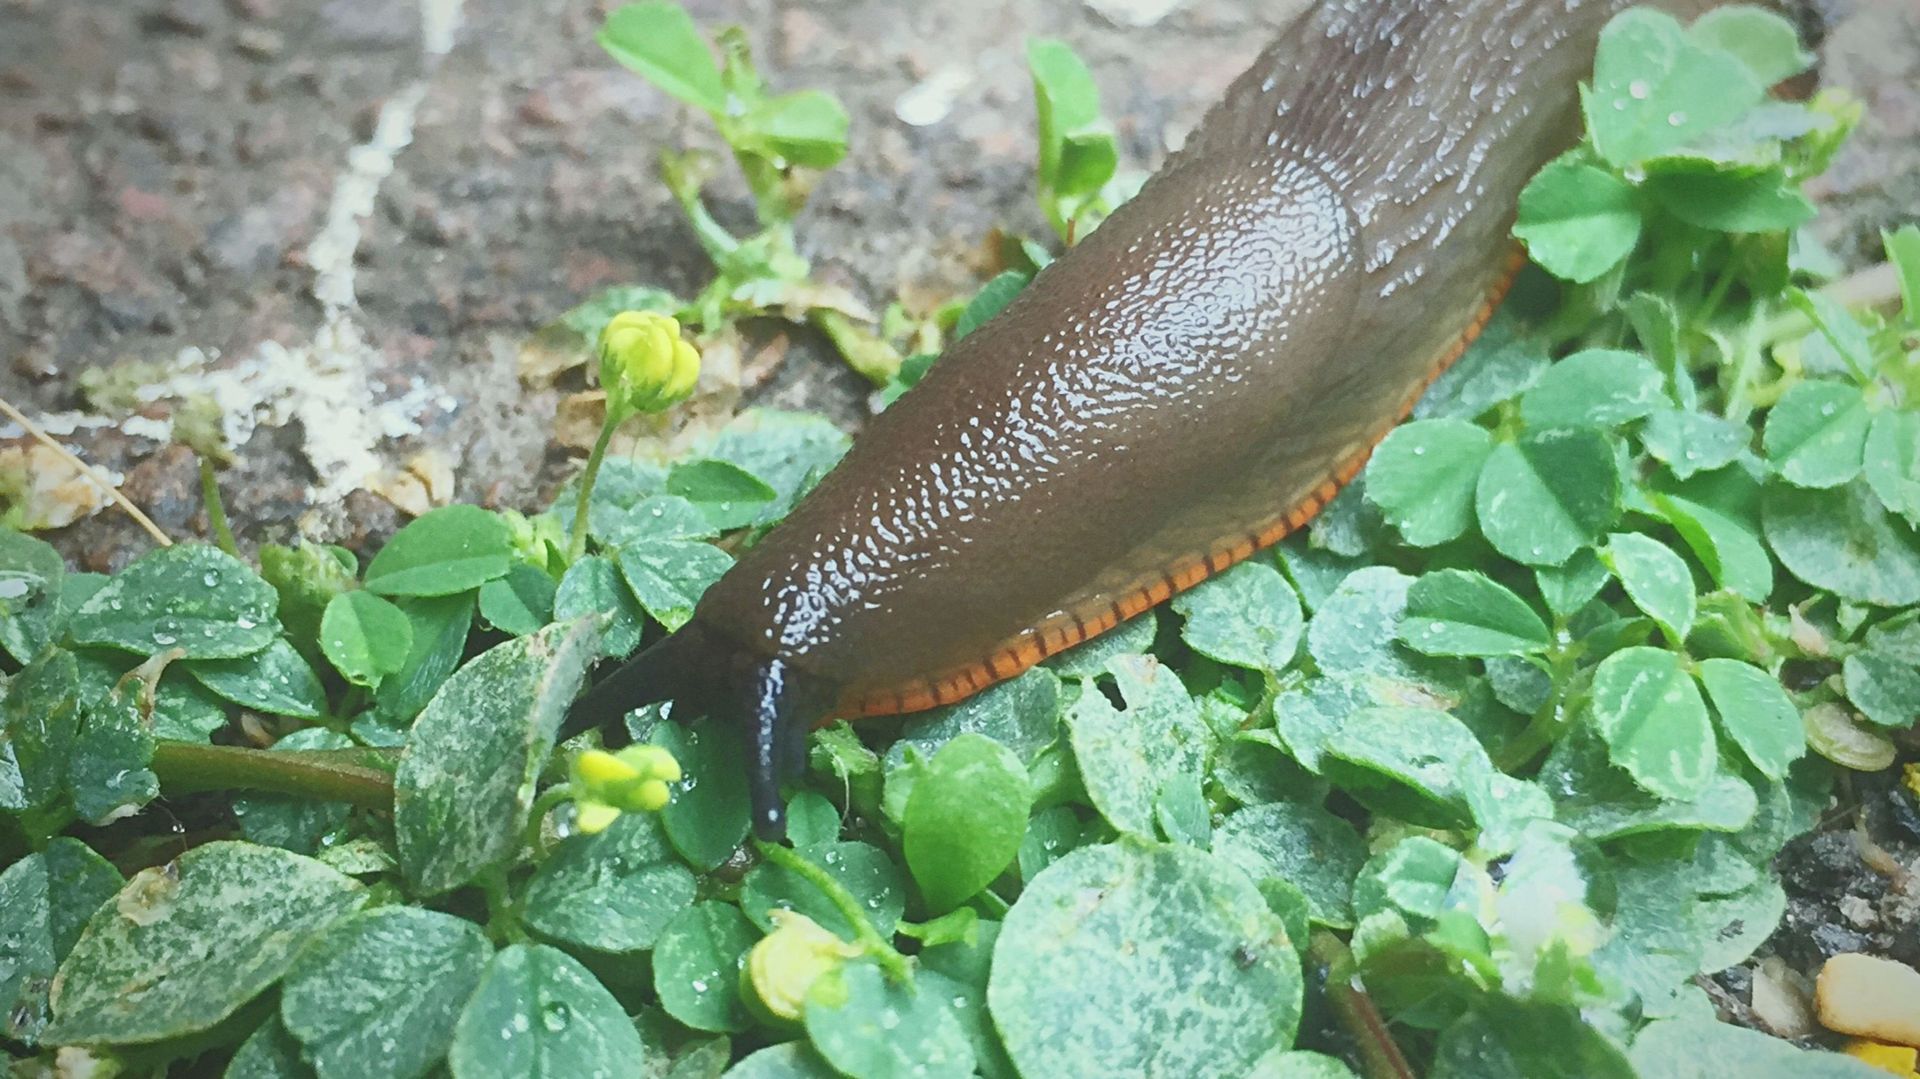 Close-Up Of Slug On Plants